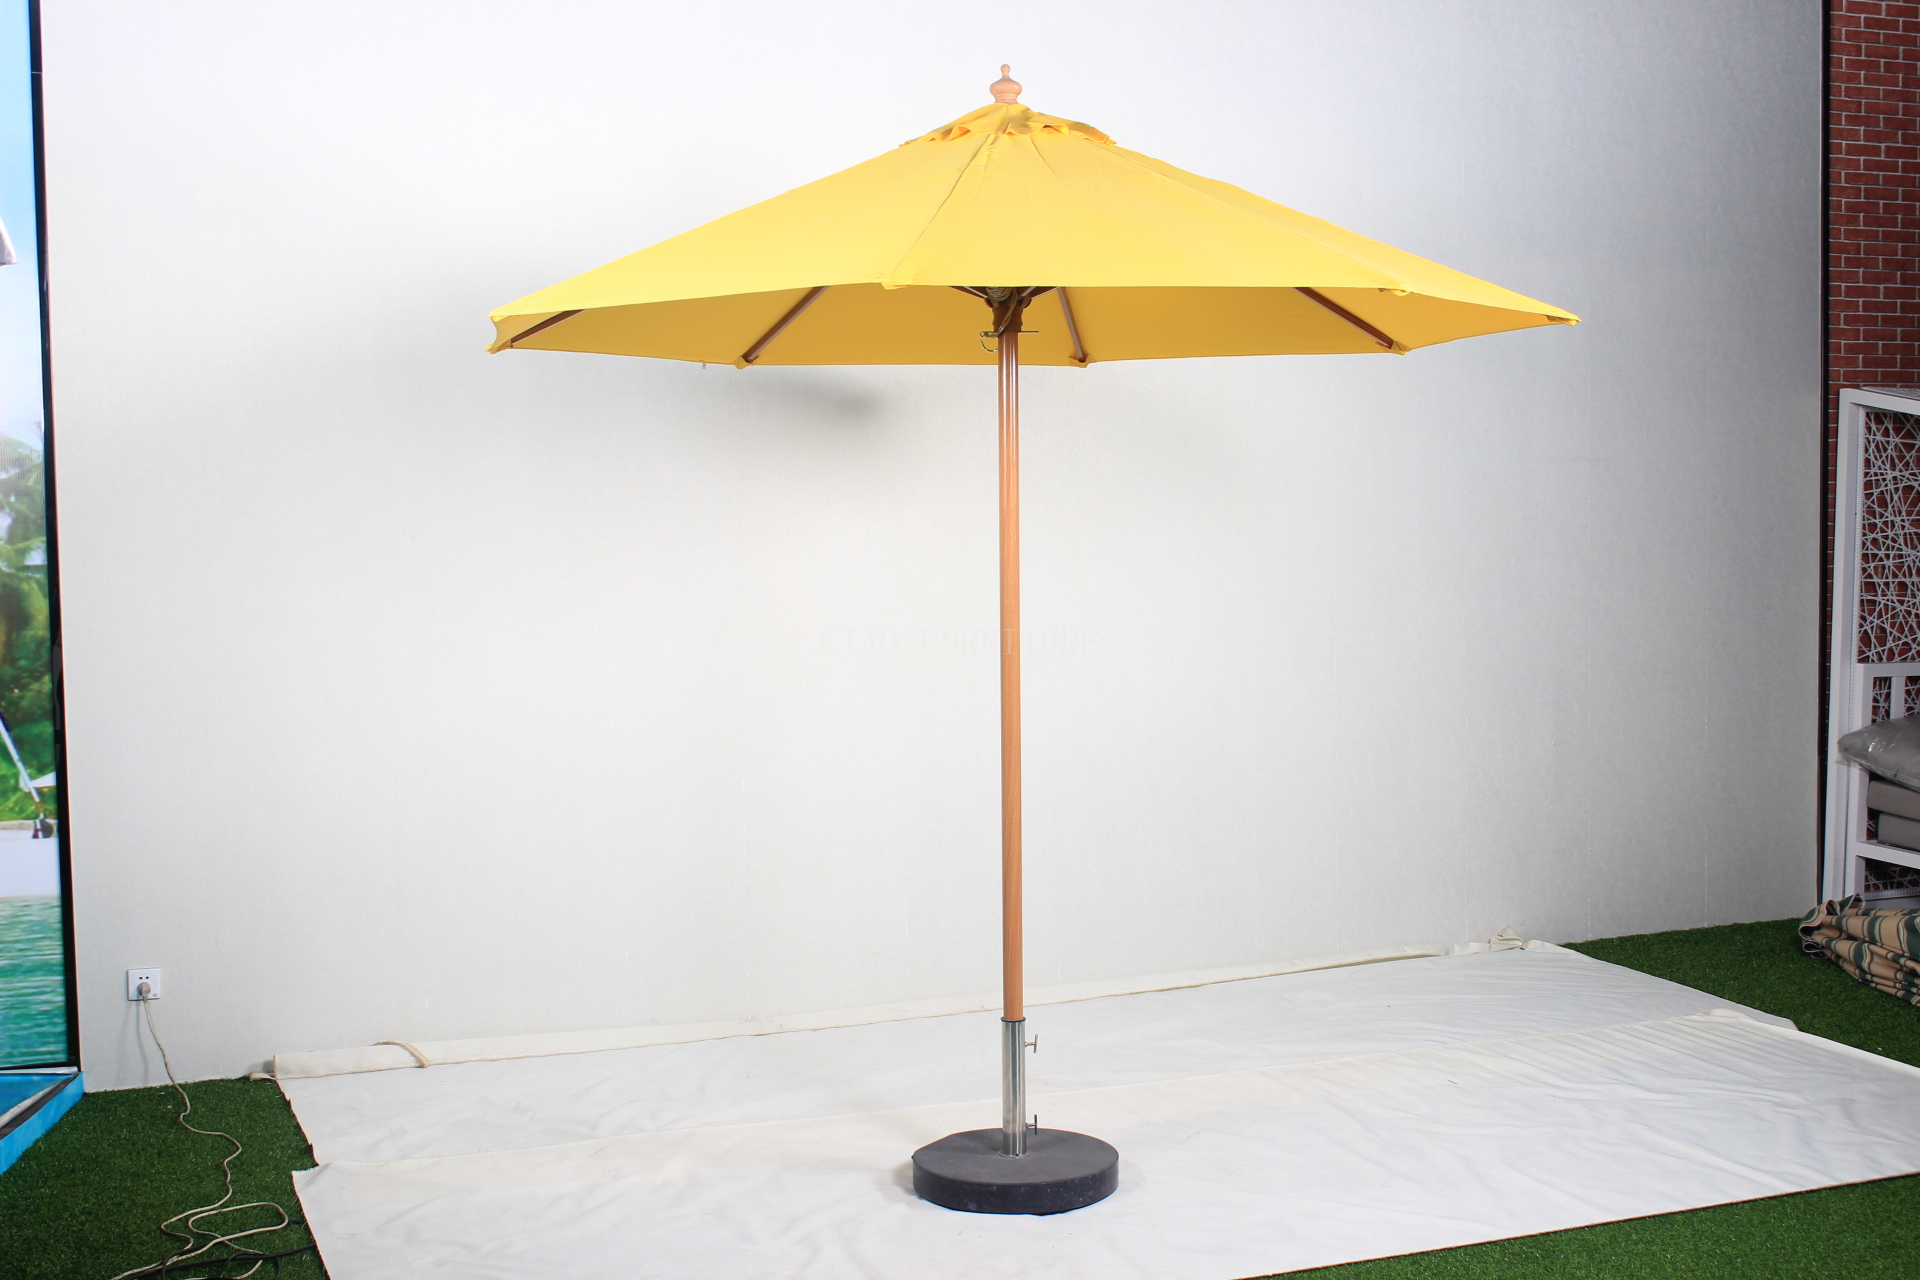 Big yellow garden parasol umbrella